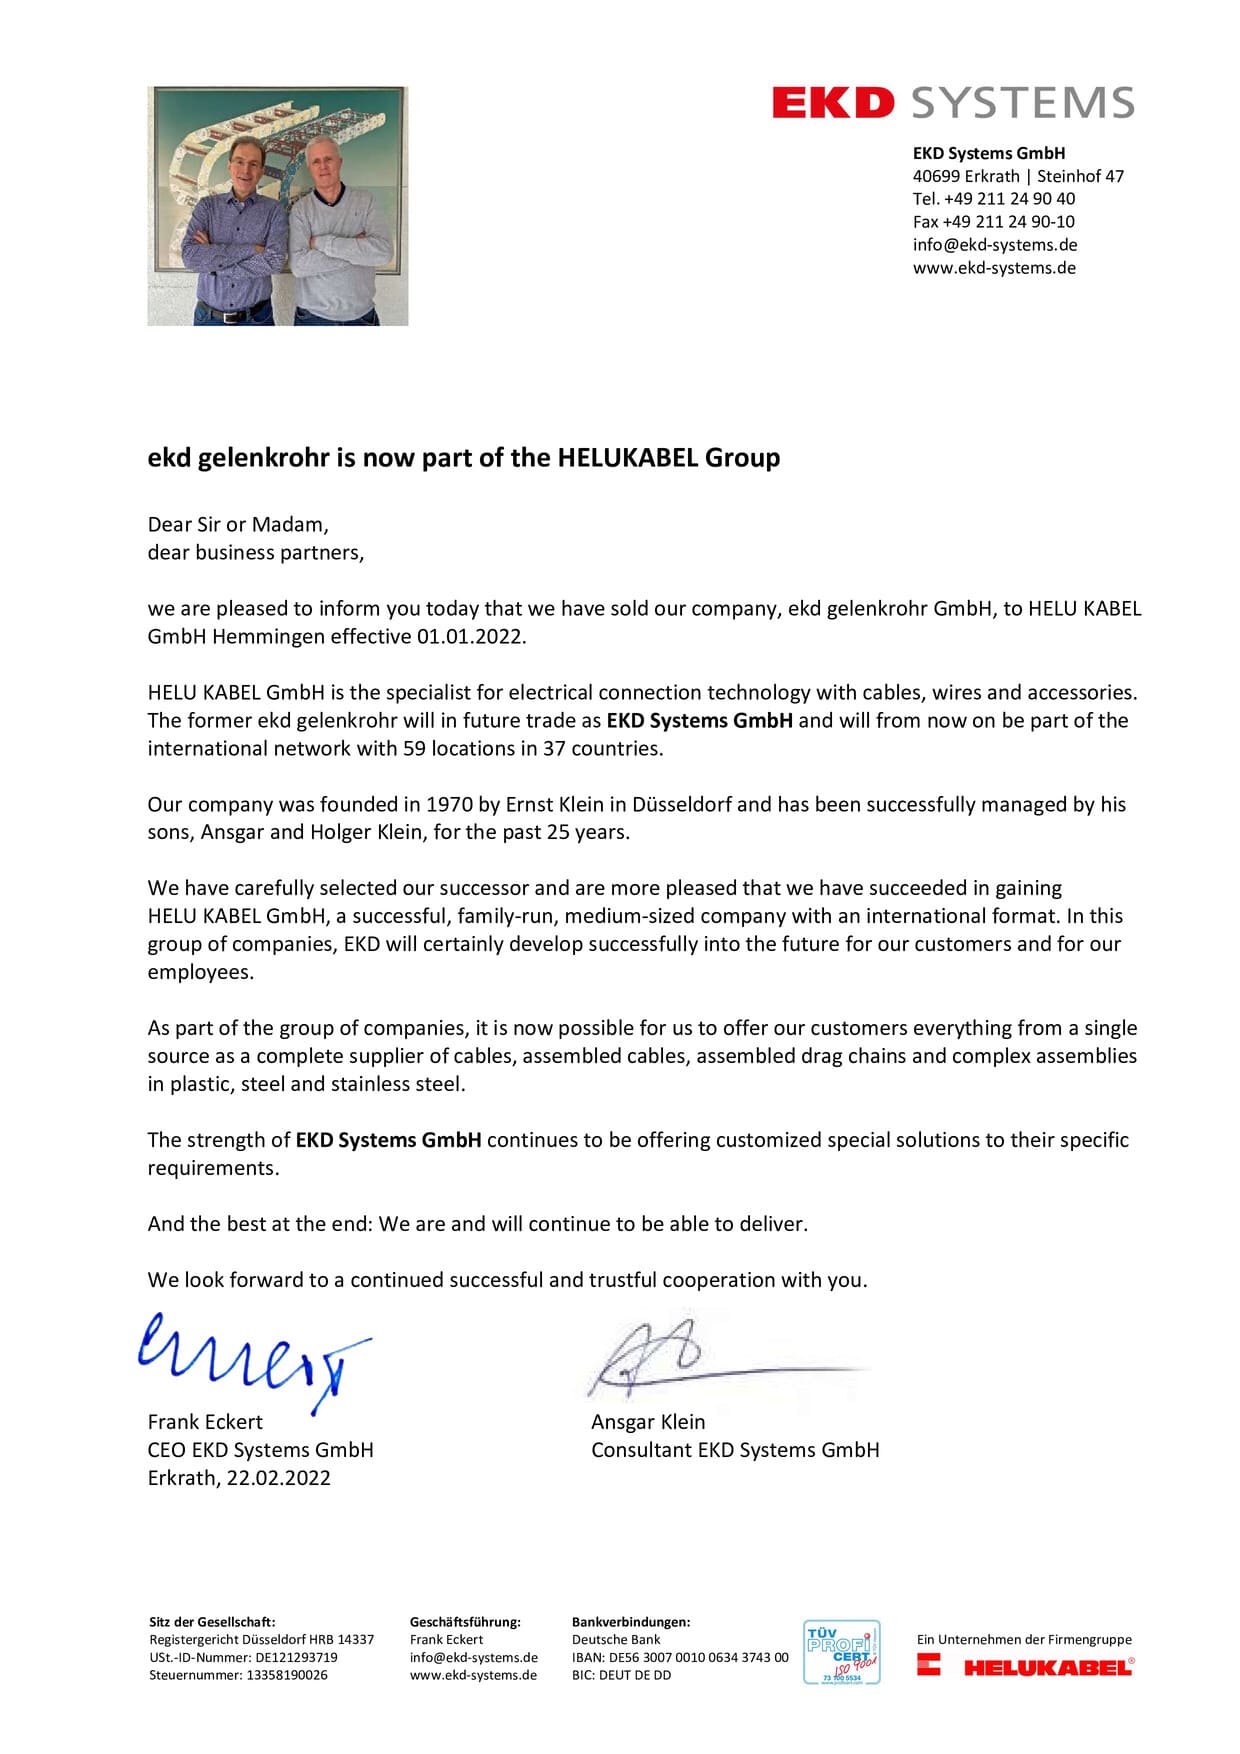 Письмо о переименовании компании EKD Gelenkrohr GmbH в EKD Systems GmbH на английском